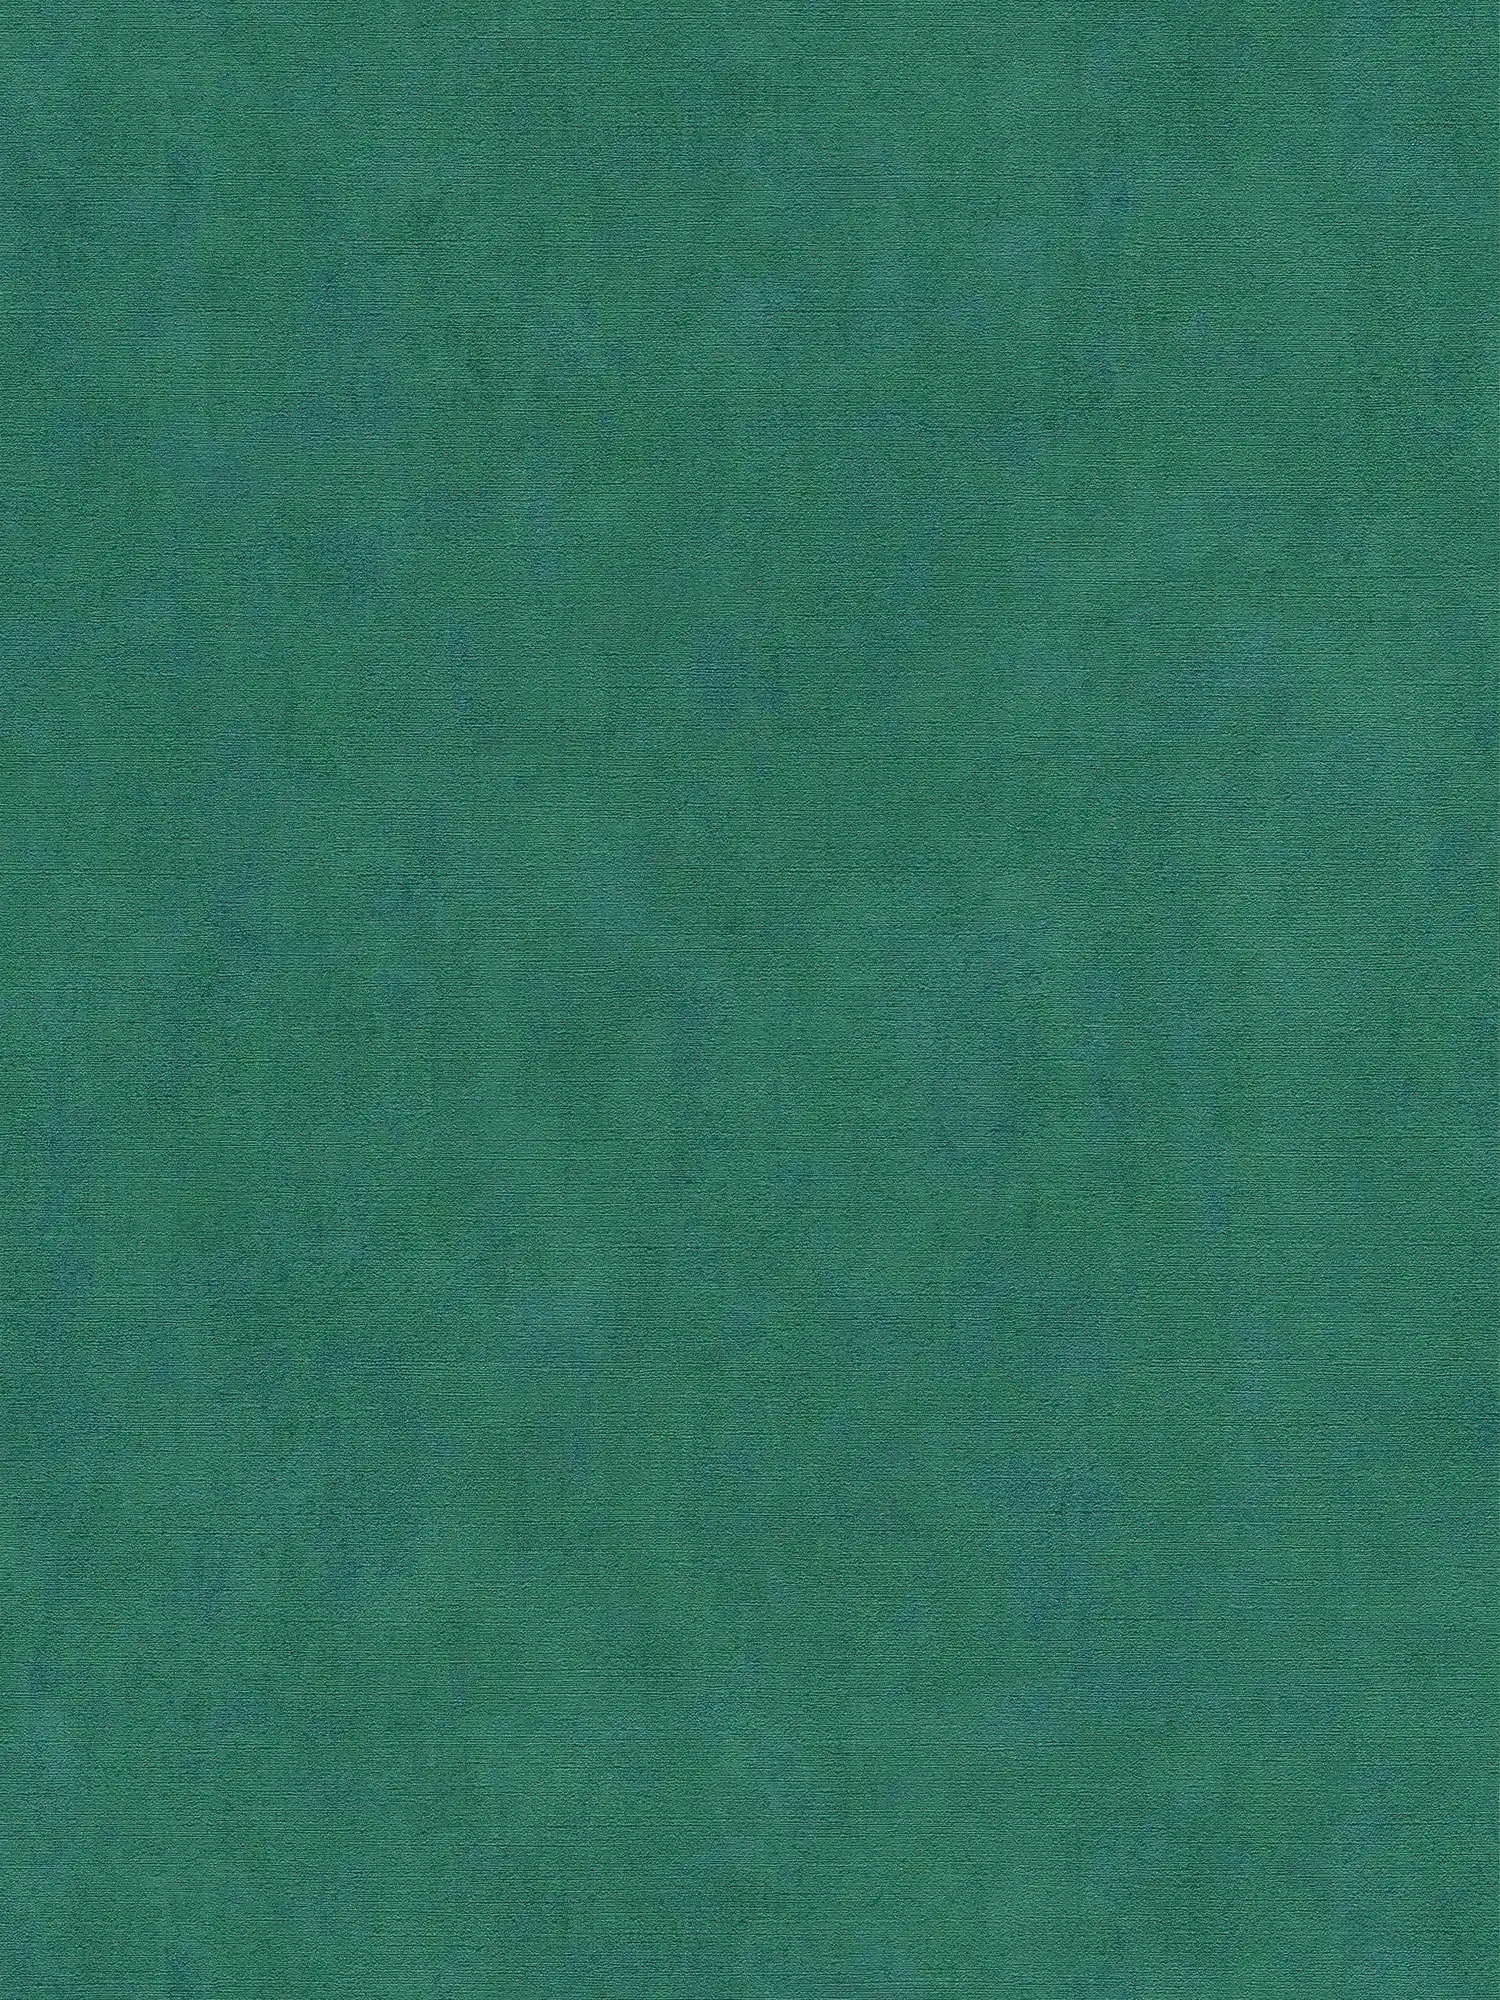 behang smaragdgroen gevlekt met blauw metallic effect - blauw, groen
